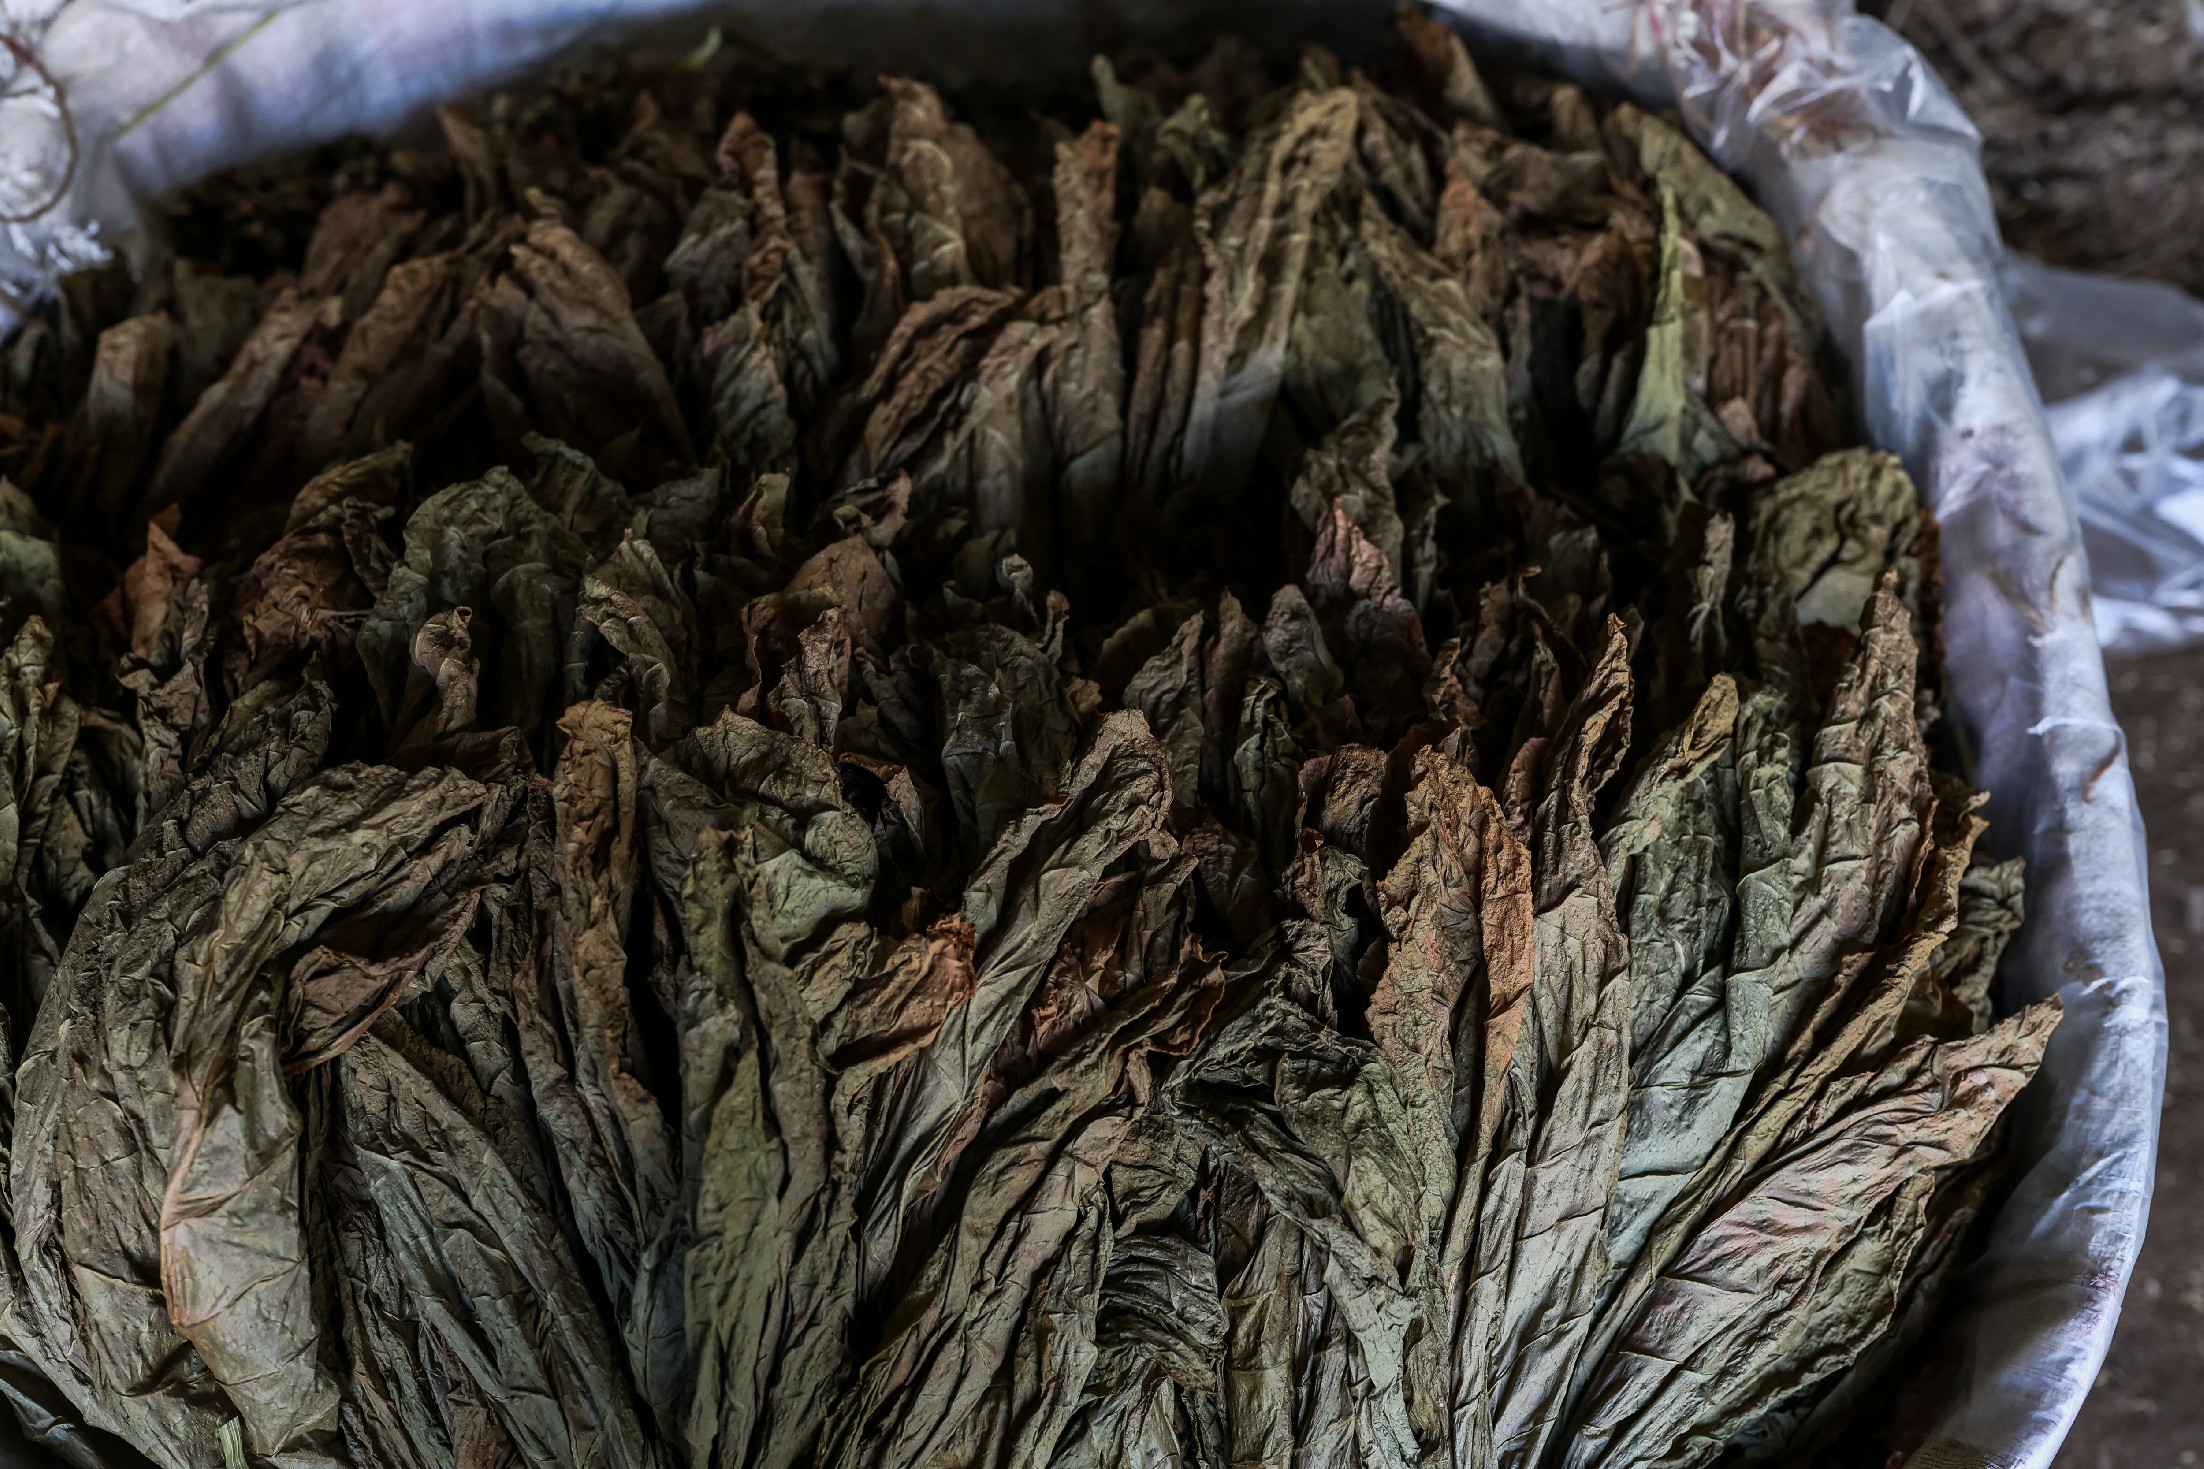 Tizenhat kilogramm fogyasztási dohányt találtak egy padláson Szendrő mellett